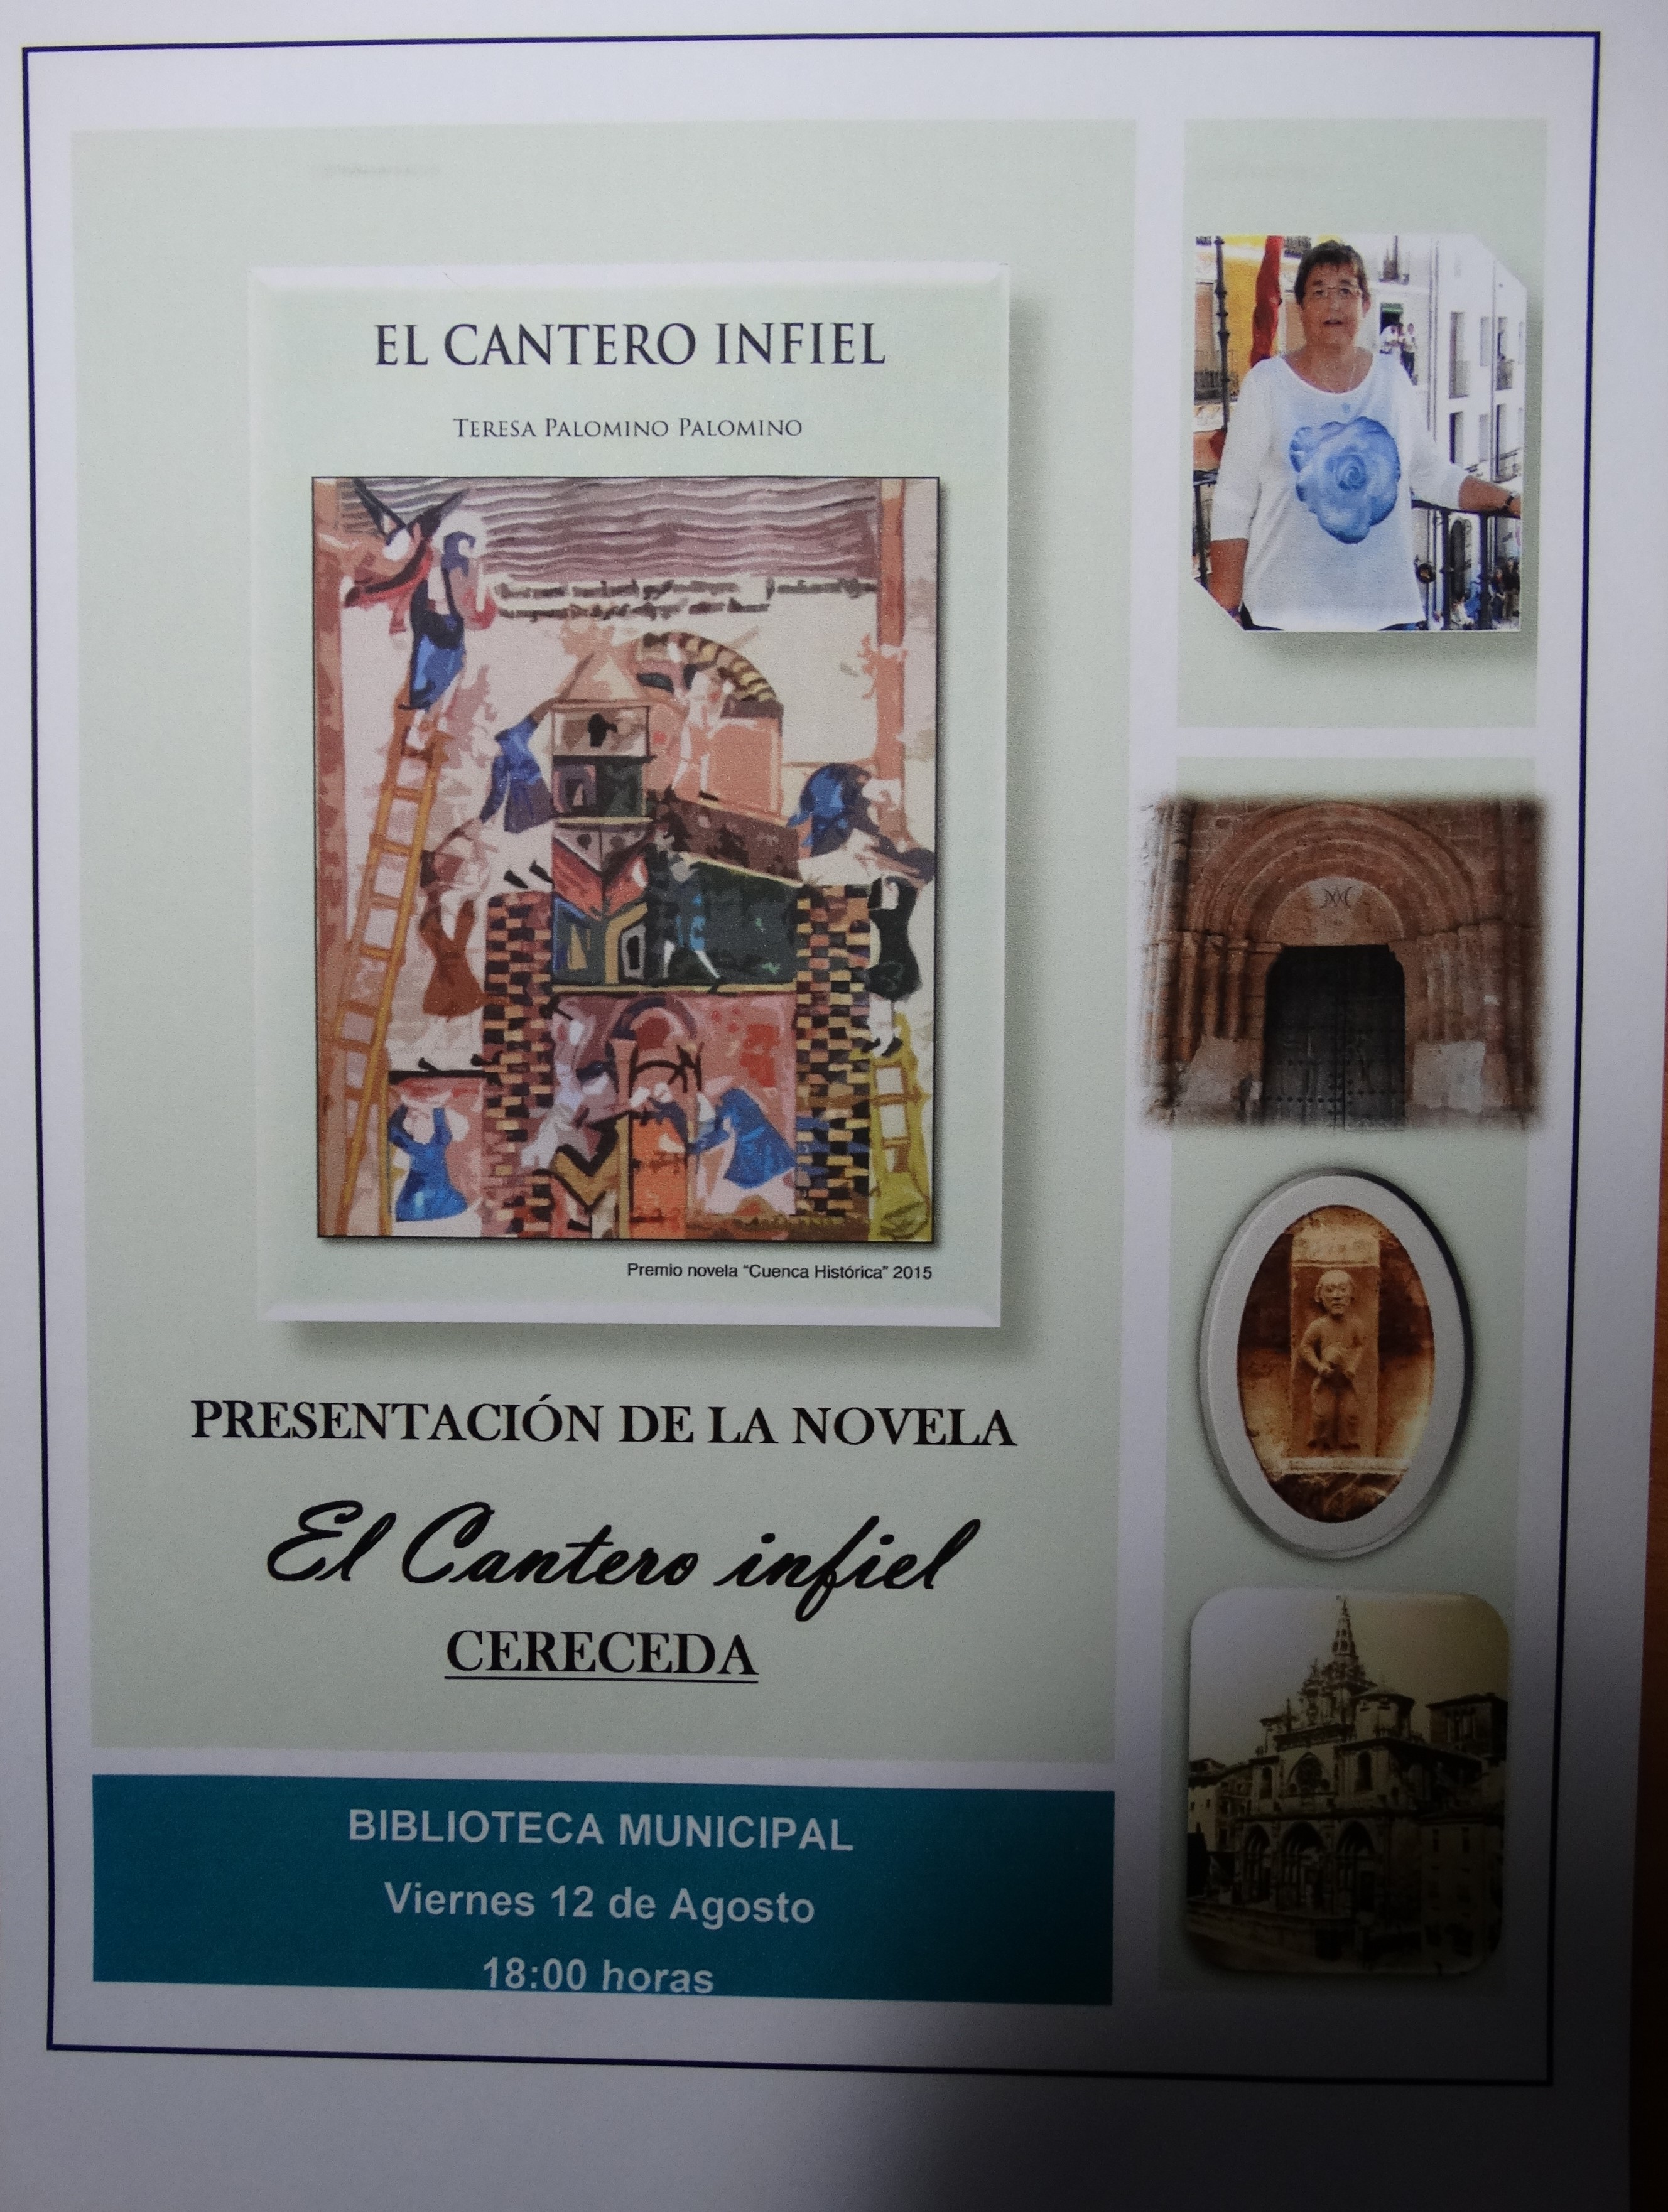 Presentación de la novela El Cantero infiel